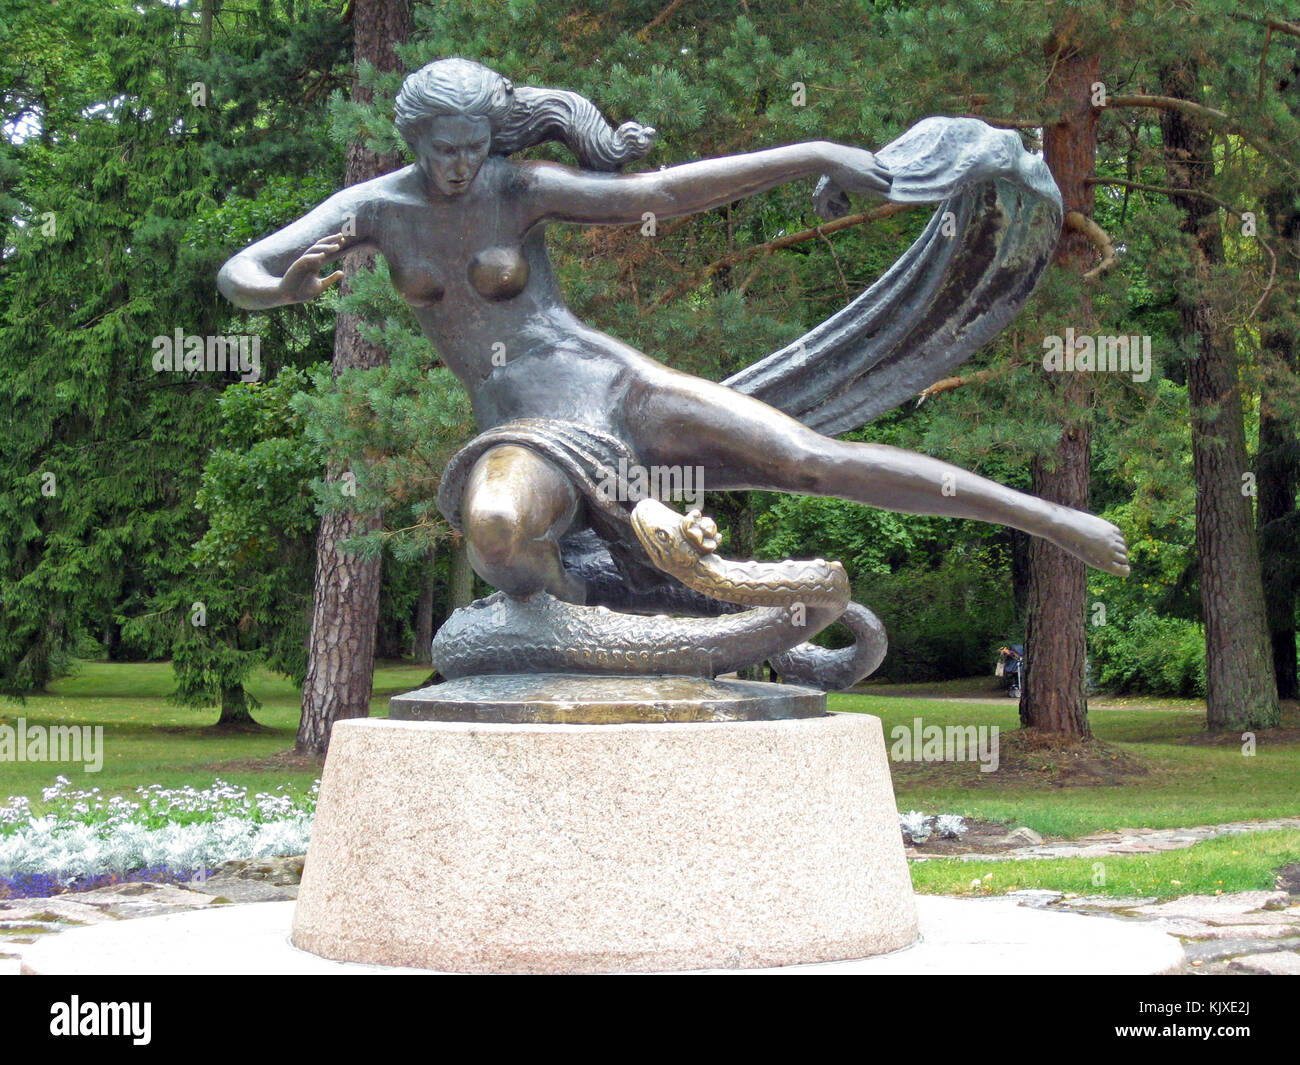 Palanga, Lituania - 12 agosto 2009: statua in bronzo di donna e Snake si trova nel parco comunale. Foto Stock